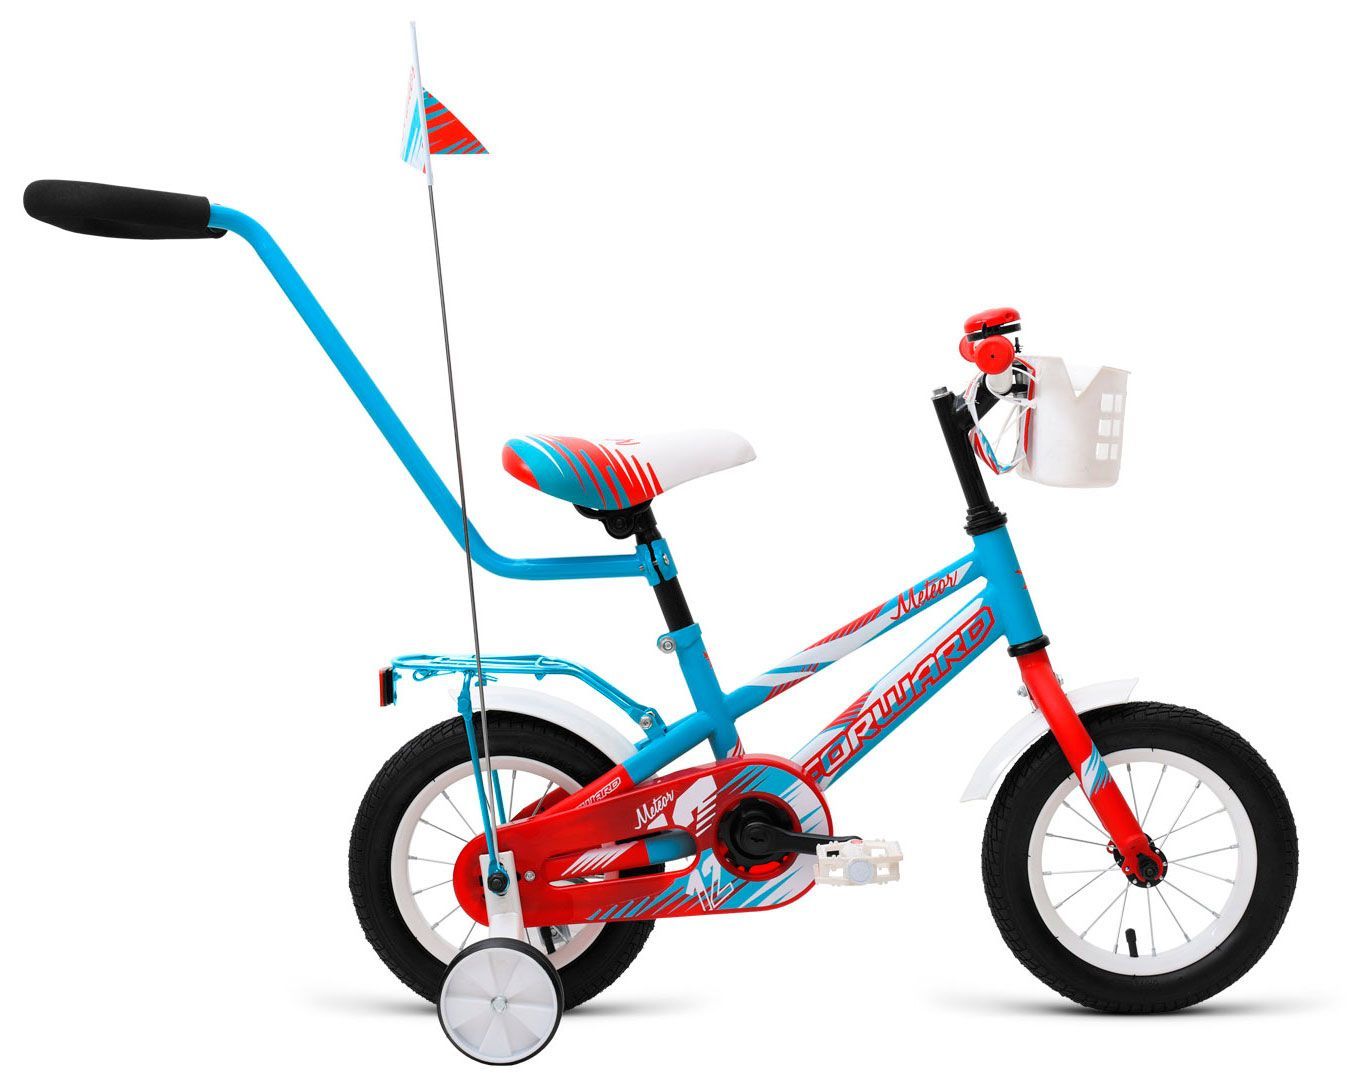  Отзывы о Трехколесный детский велосипед Forward Meteor 12 2018